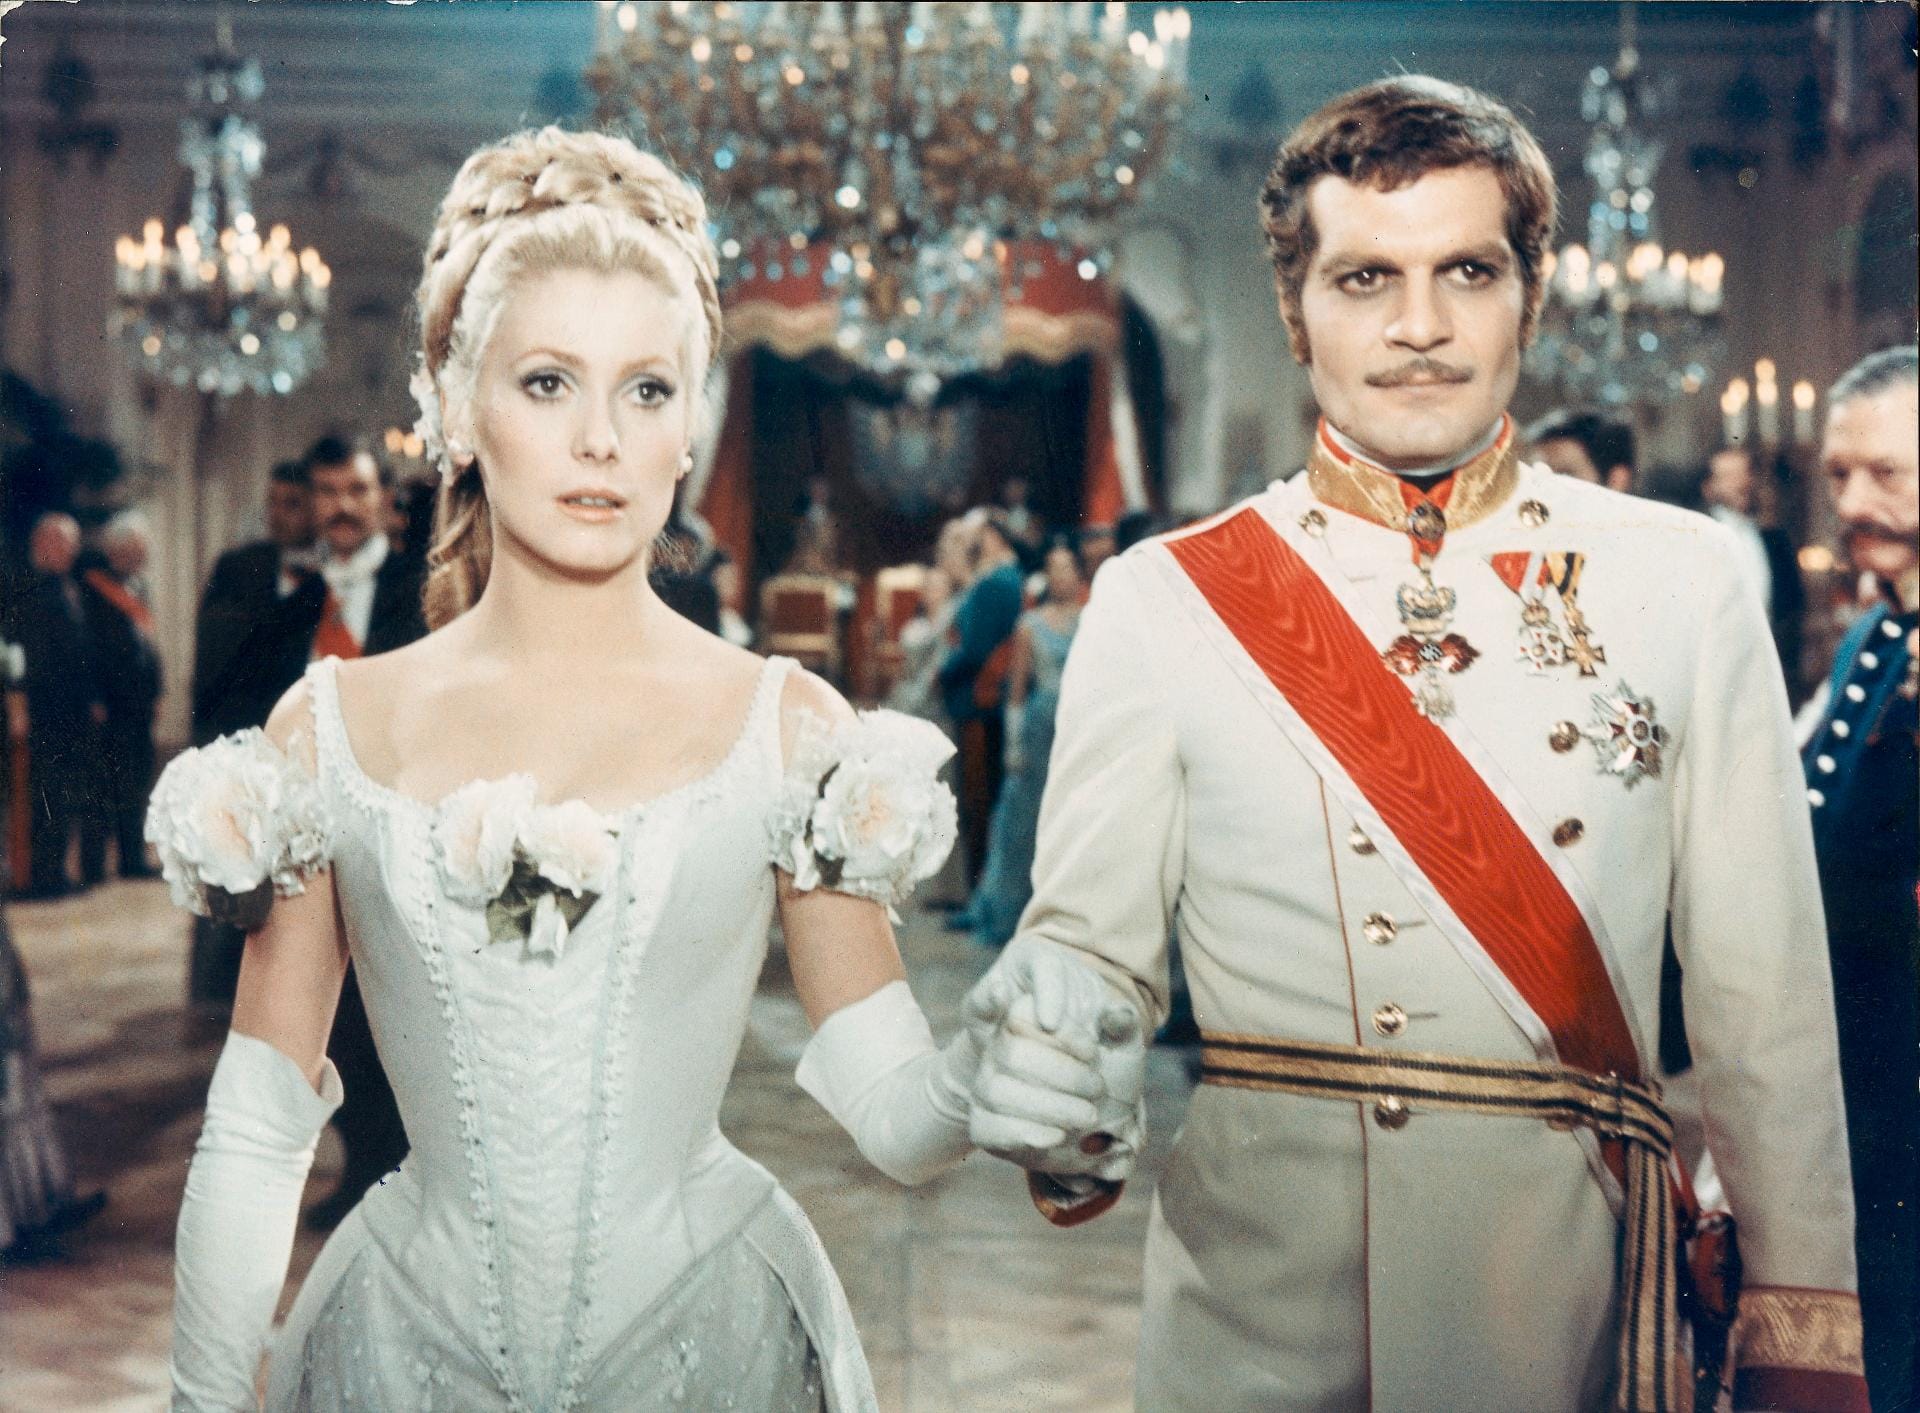 Catherine Deneuve und Omar Sharif in "Mayerling" aus dem Jahr 1968. Der französisch-britische Historienfilm erzählt die Liebesgeschichte des österreichischen Kronprinzen Rudolf und seiner Geliebten Maria Vetsera.